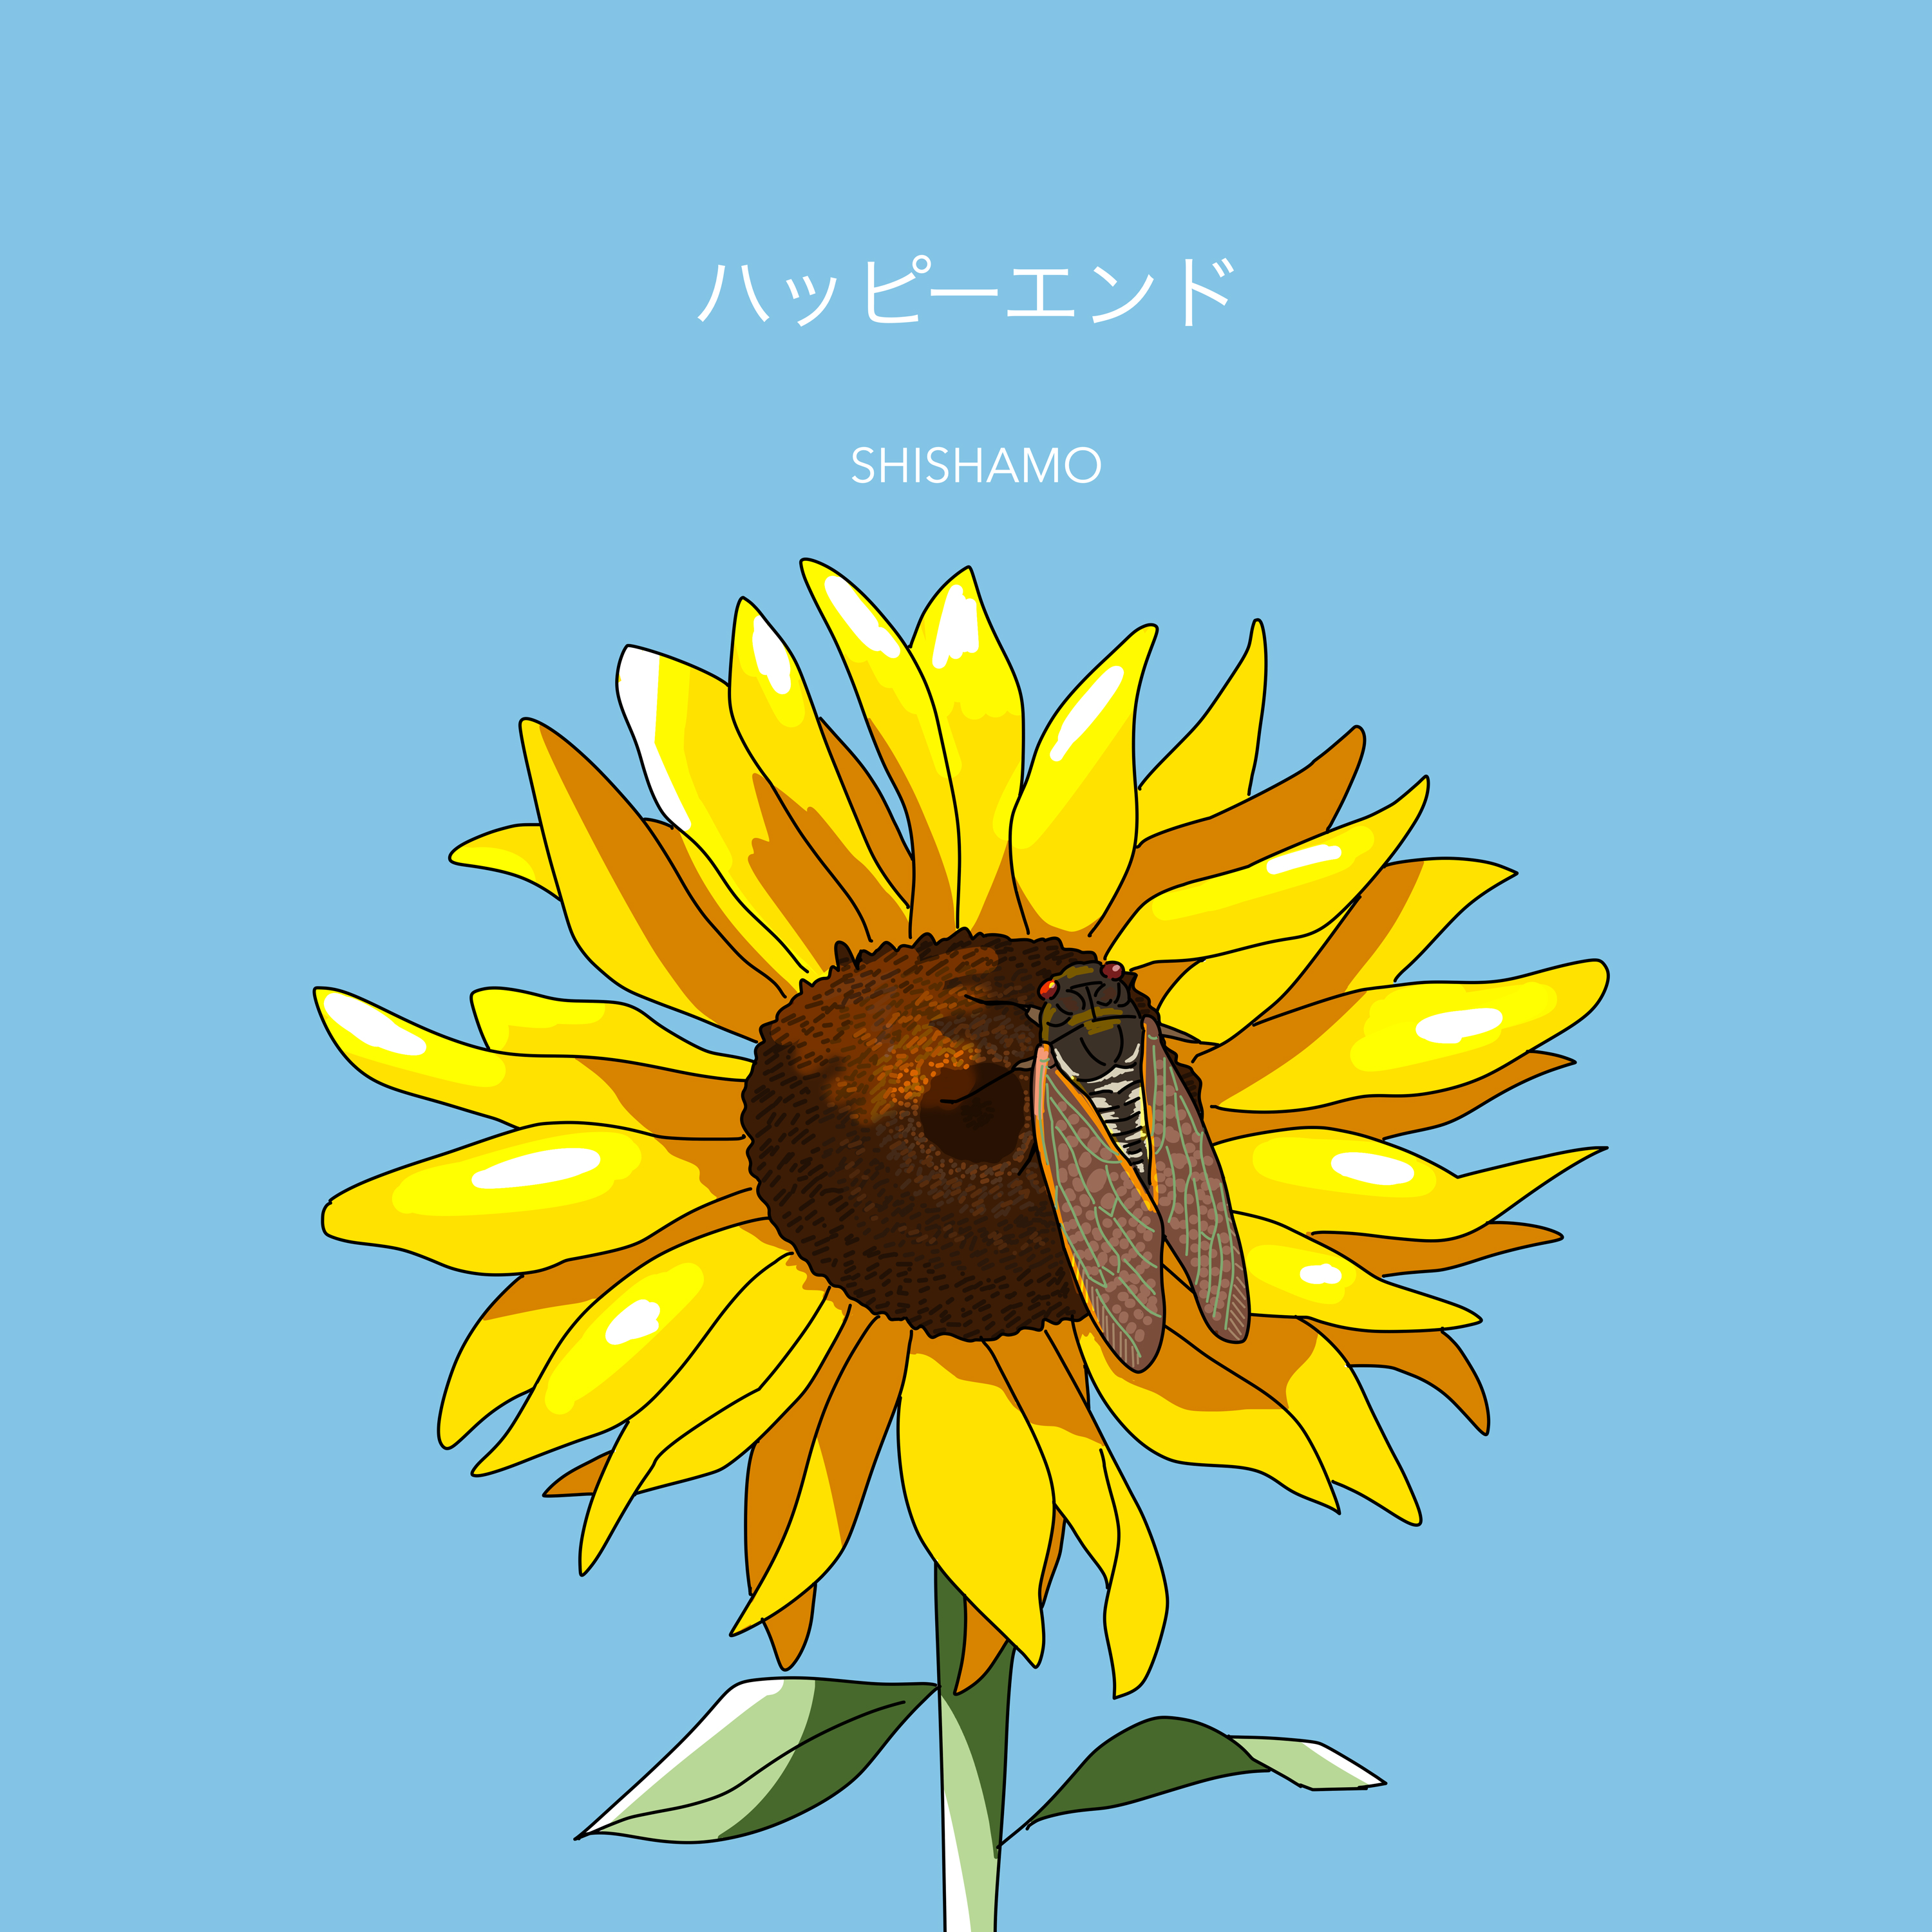 新曲「ハッピーエンド」07.13(水)配信リリース決定!!!｜SHISHAMO Official Website